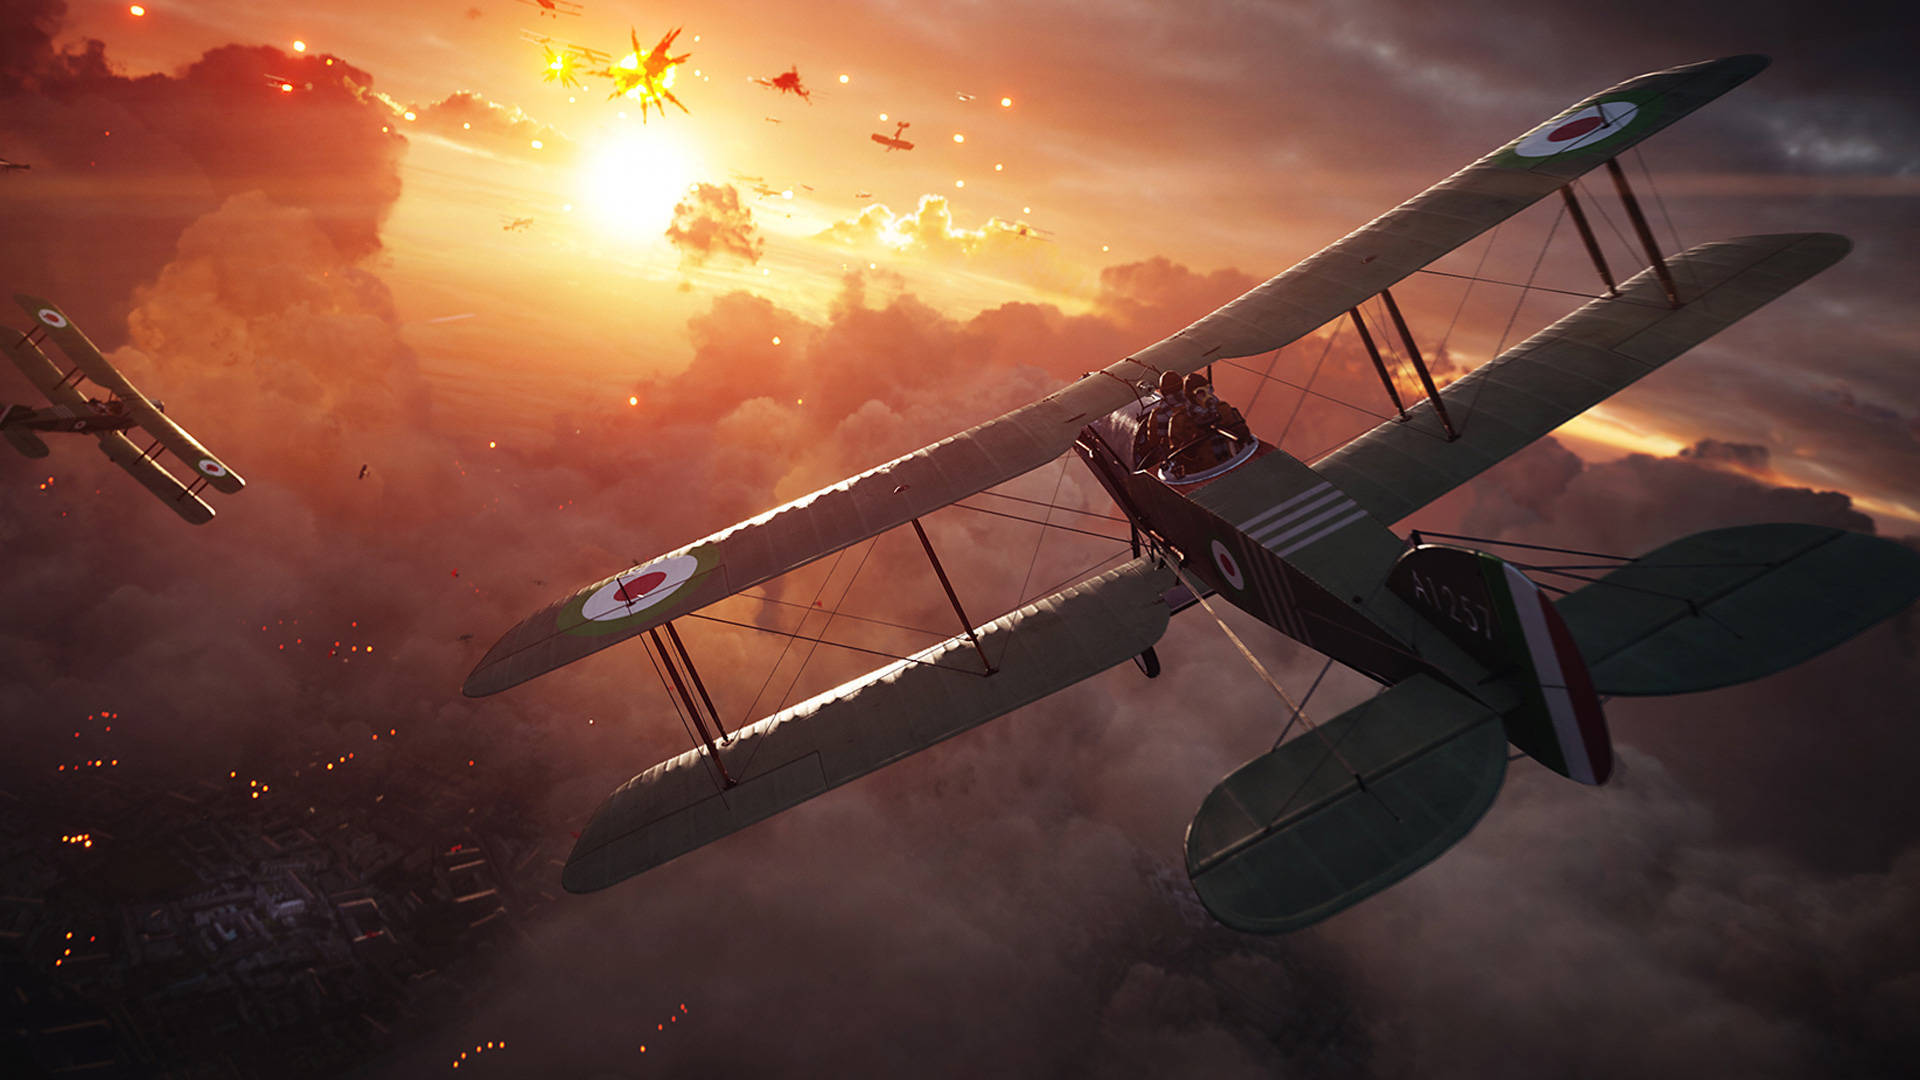 Papelde Parede Com Aviões Voando Em Alta Definição De Battlefield 1. Papel de Parede